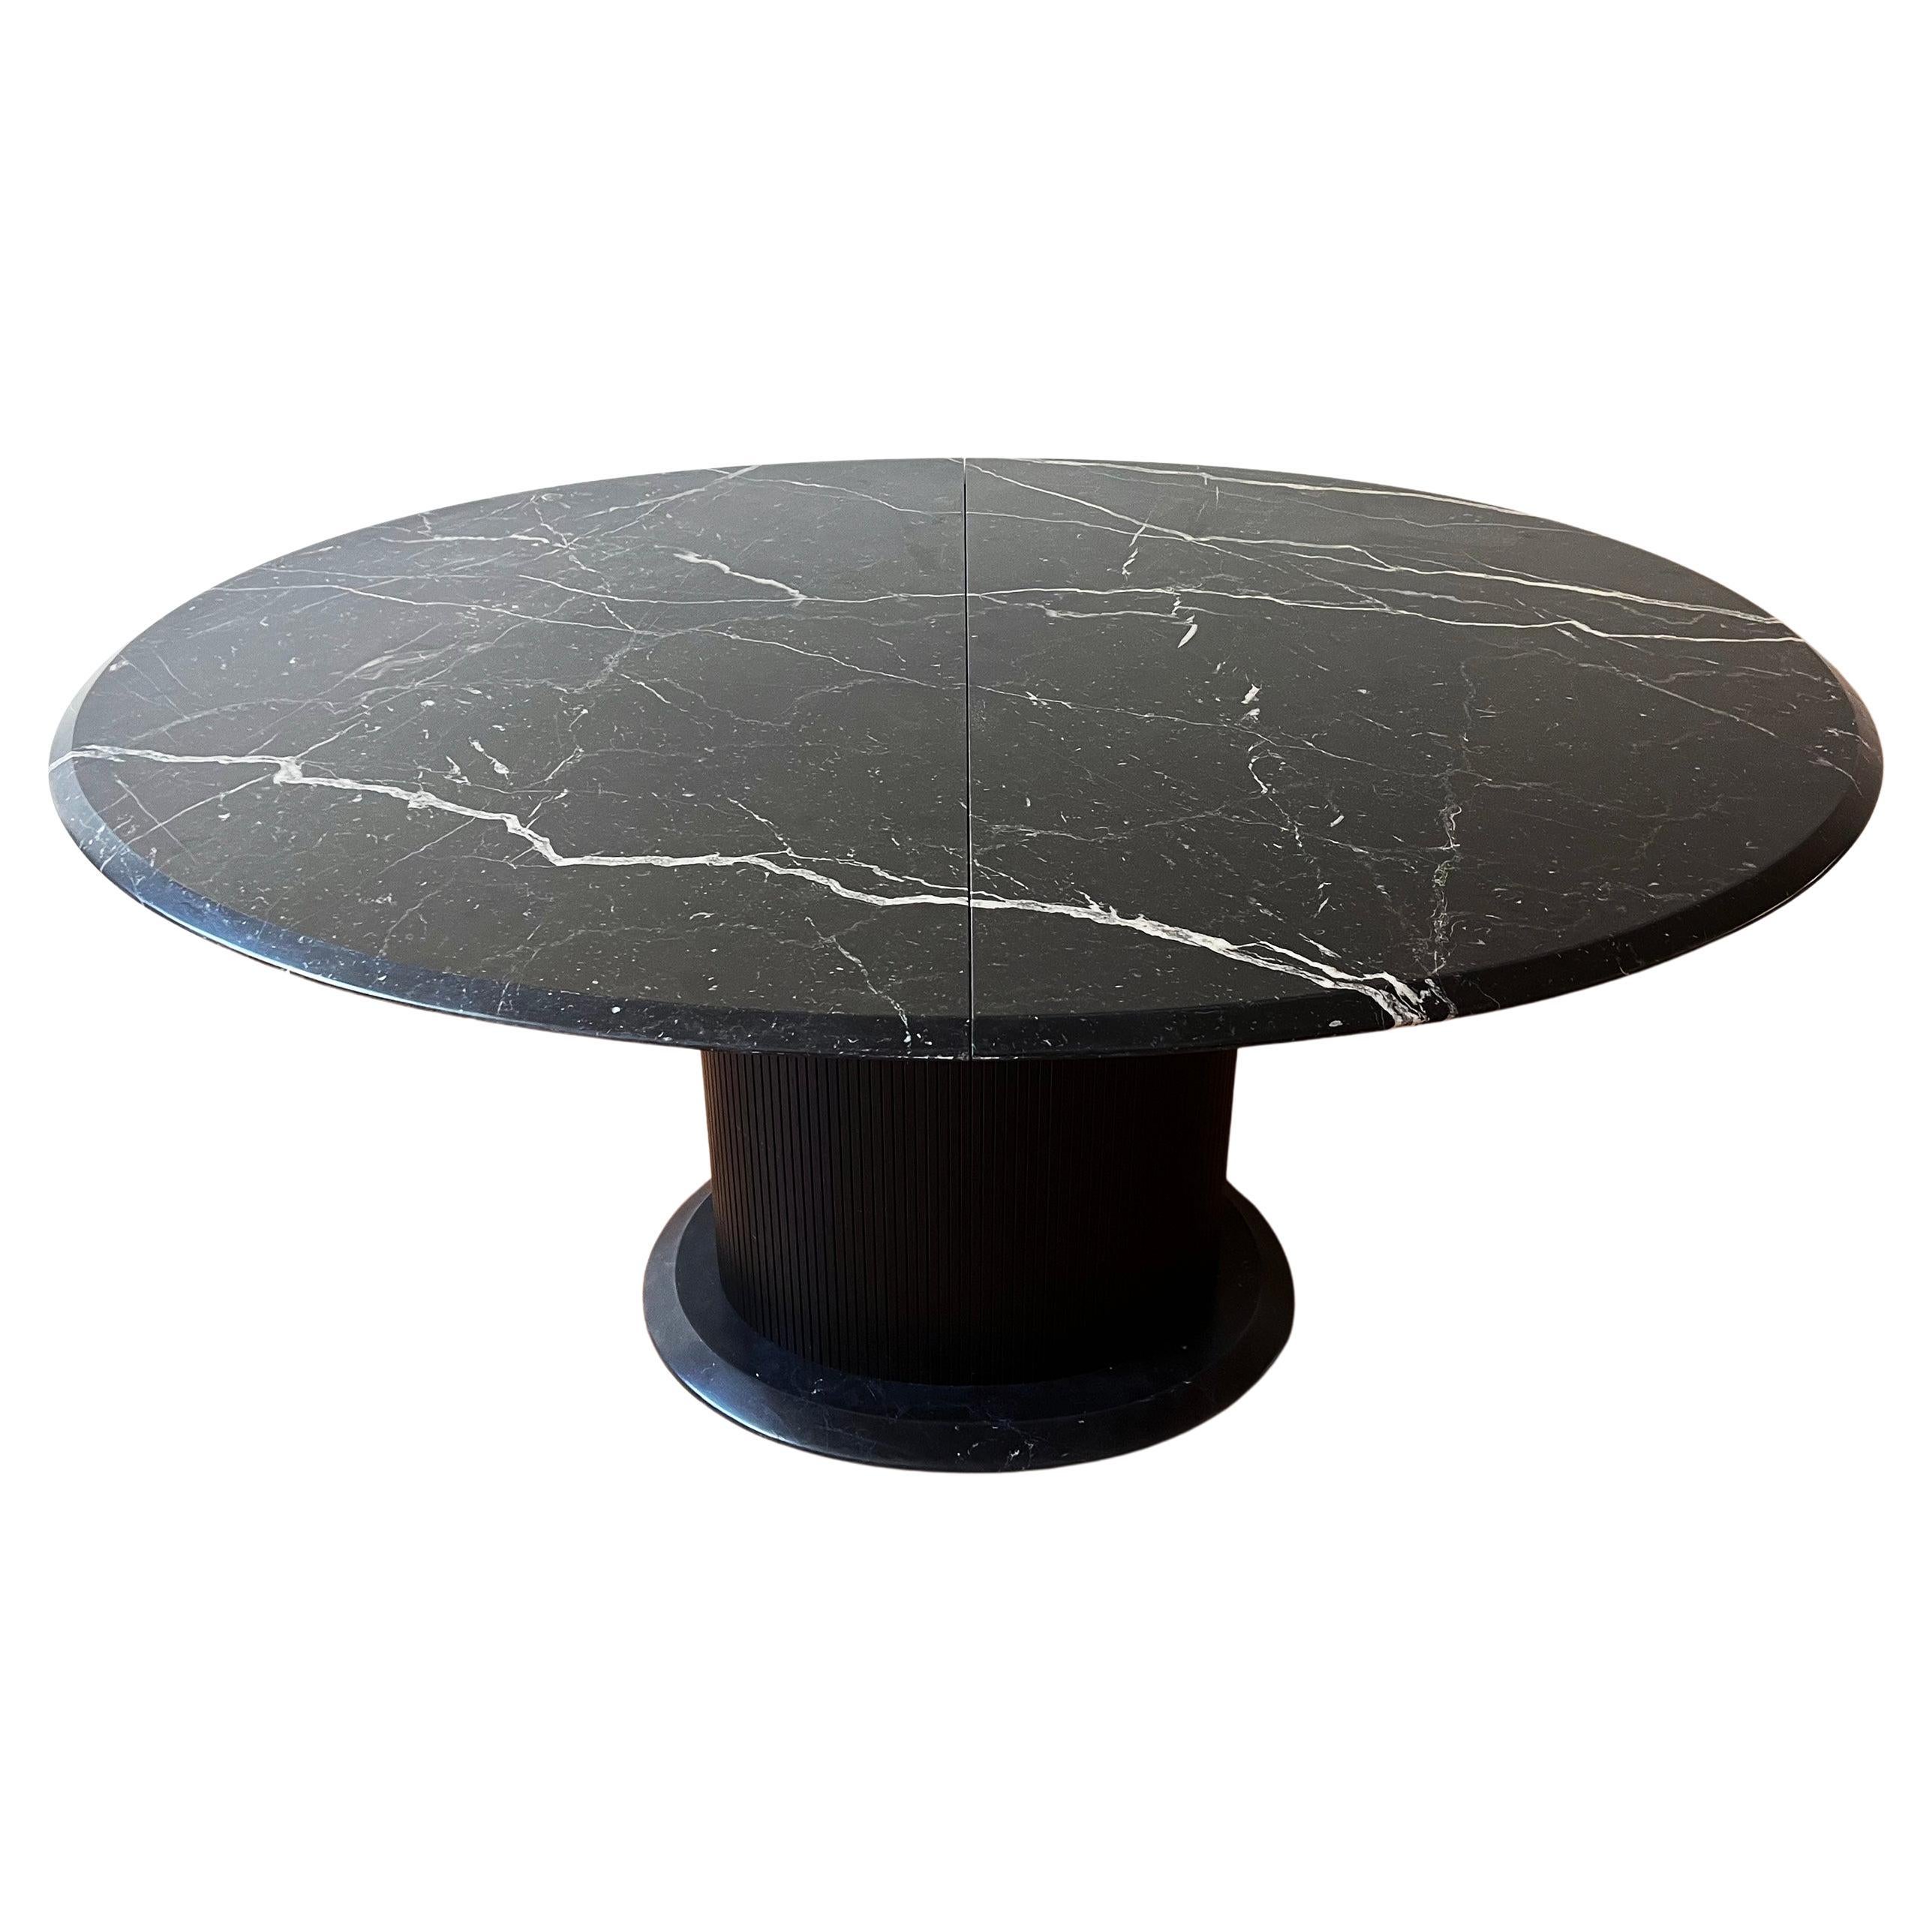 Postmoderner Marmor + Ebonisiertes Holz Oval Ausziehbarer Esstisch mit Pedestal Basis